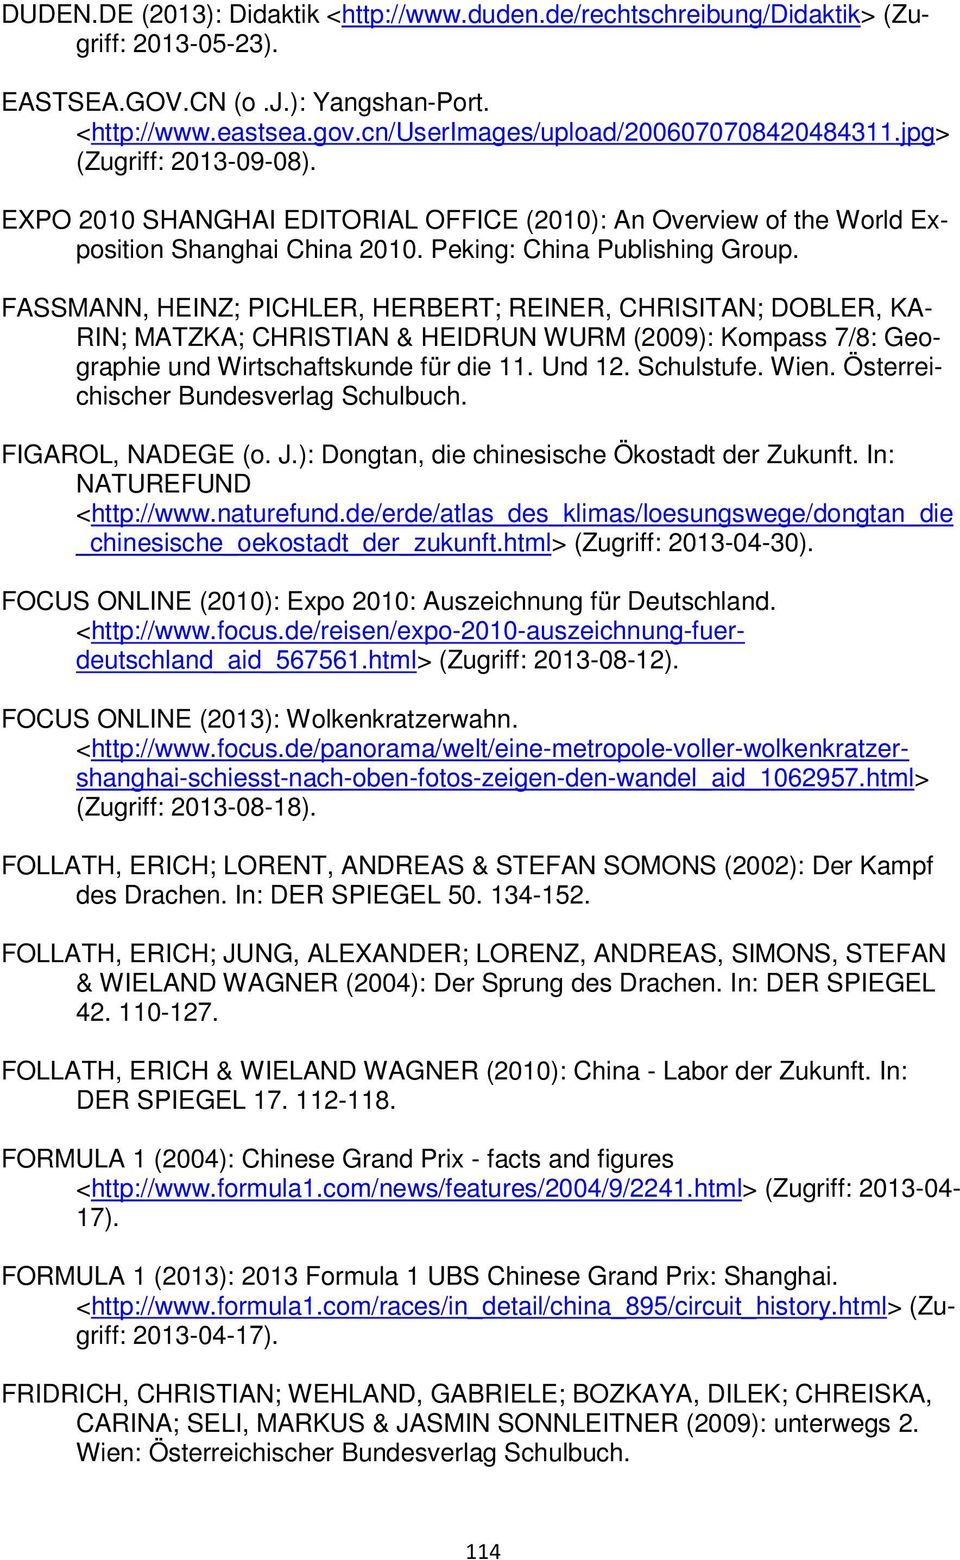 FASSMANN, HEINZ; PICHLER, HERBERT; REINER, CHRISITAN; DOBLER, KA- RIN; MATZKA; CHRISTIAN & HEIDRUN WURM (2009): Kompass 7/8: Geographie und Wirtschaftskunde für die 11. Und 12. Schulstufe. Wien.